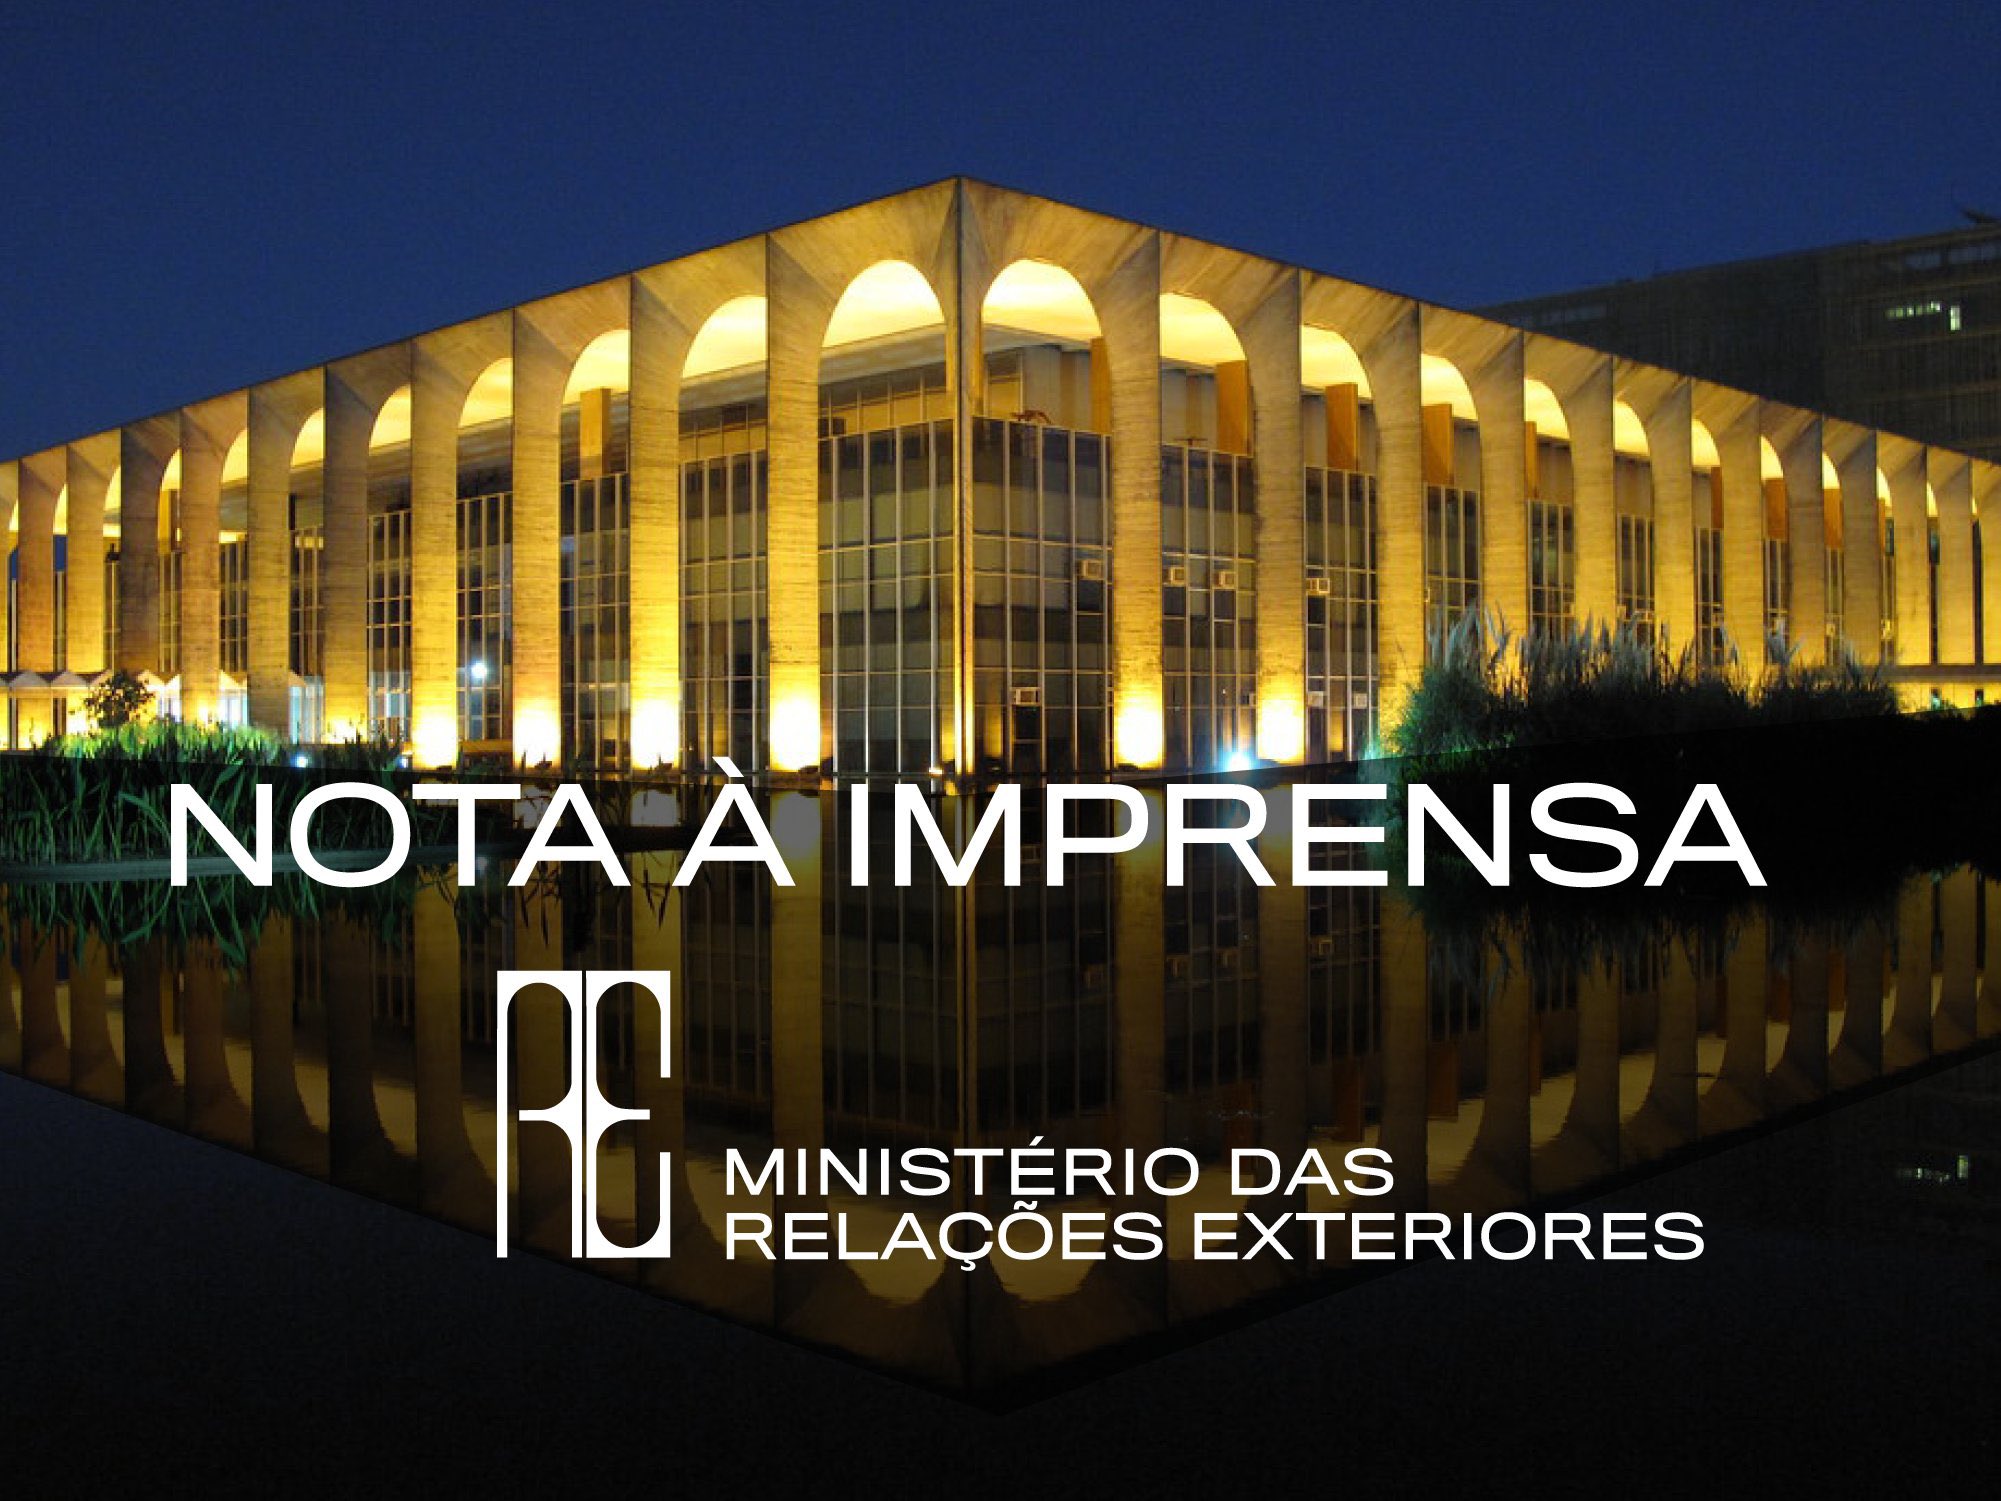 Republic of Panama — Ministério das Relações Exteriores